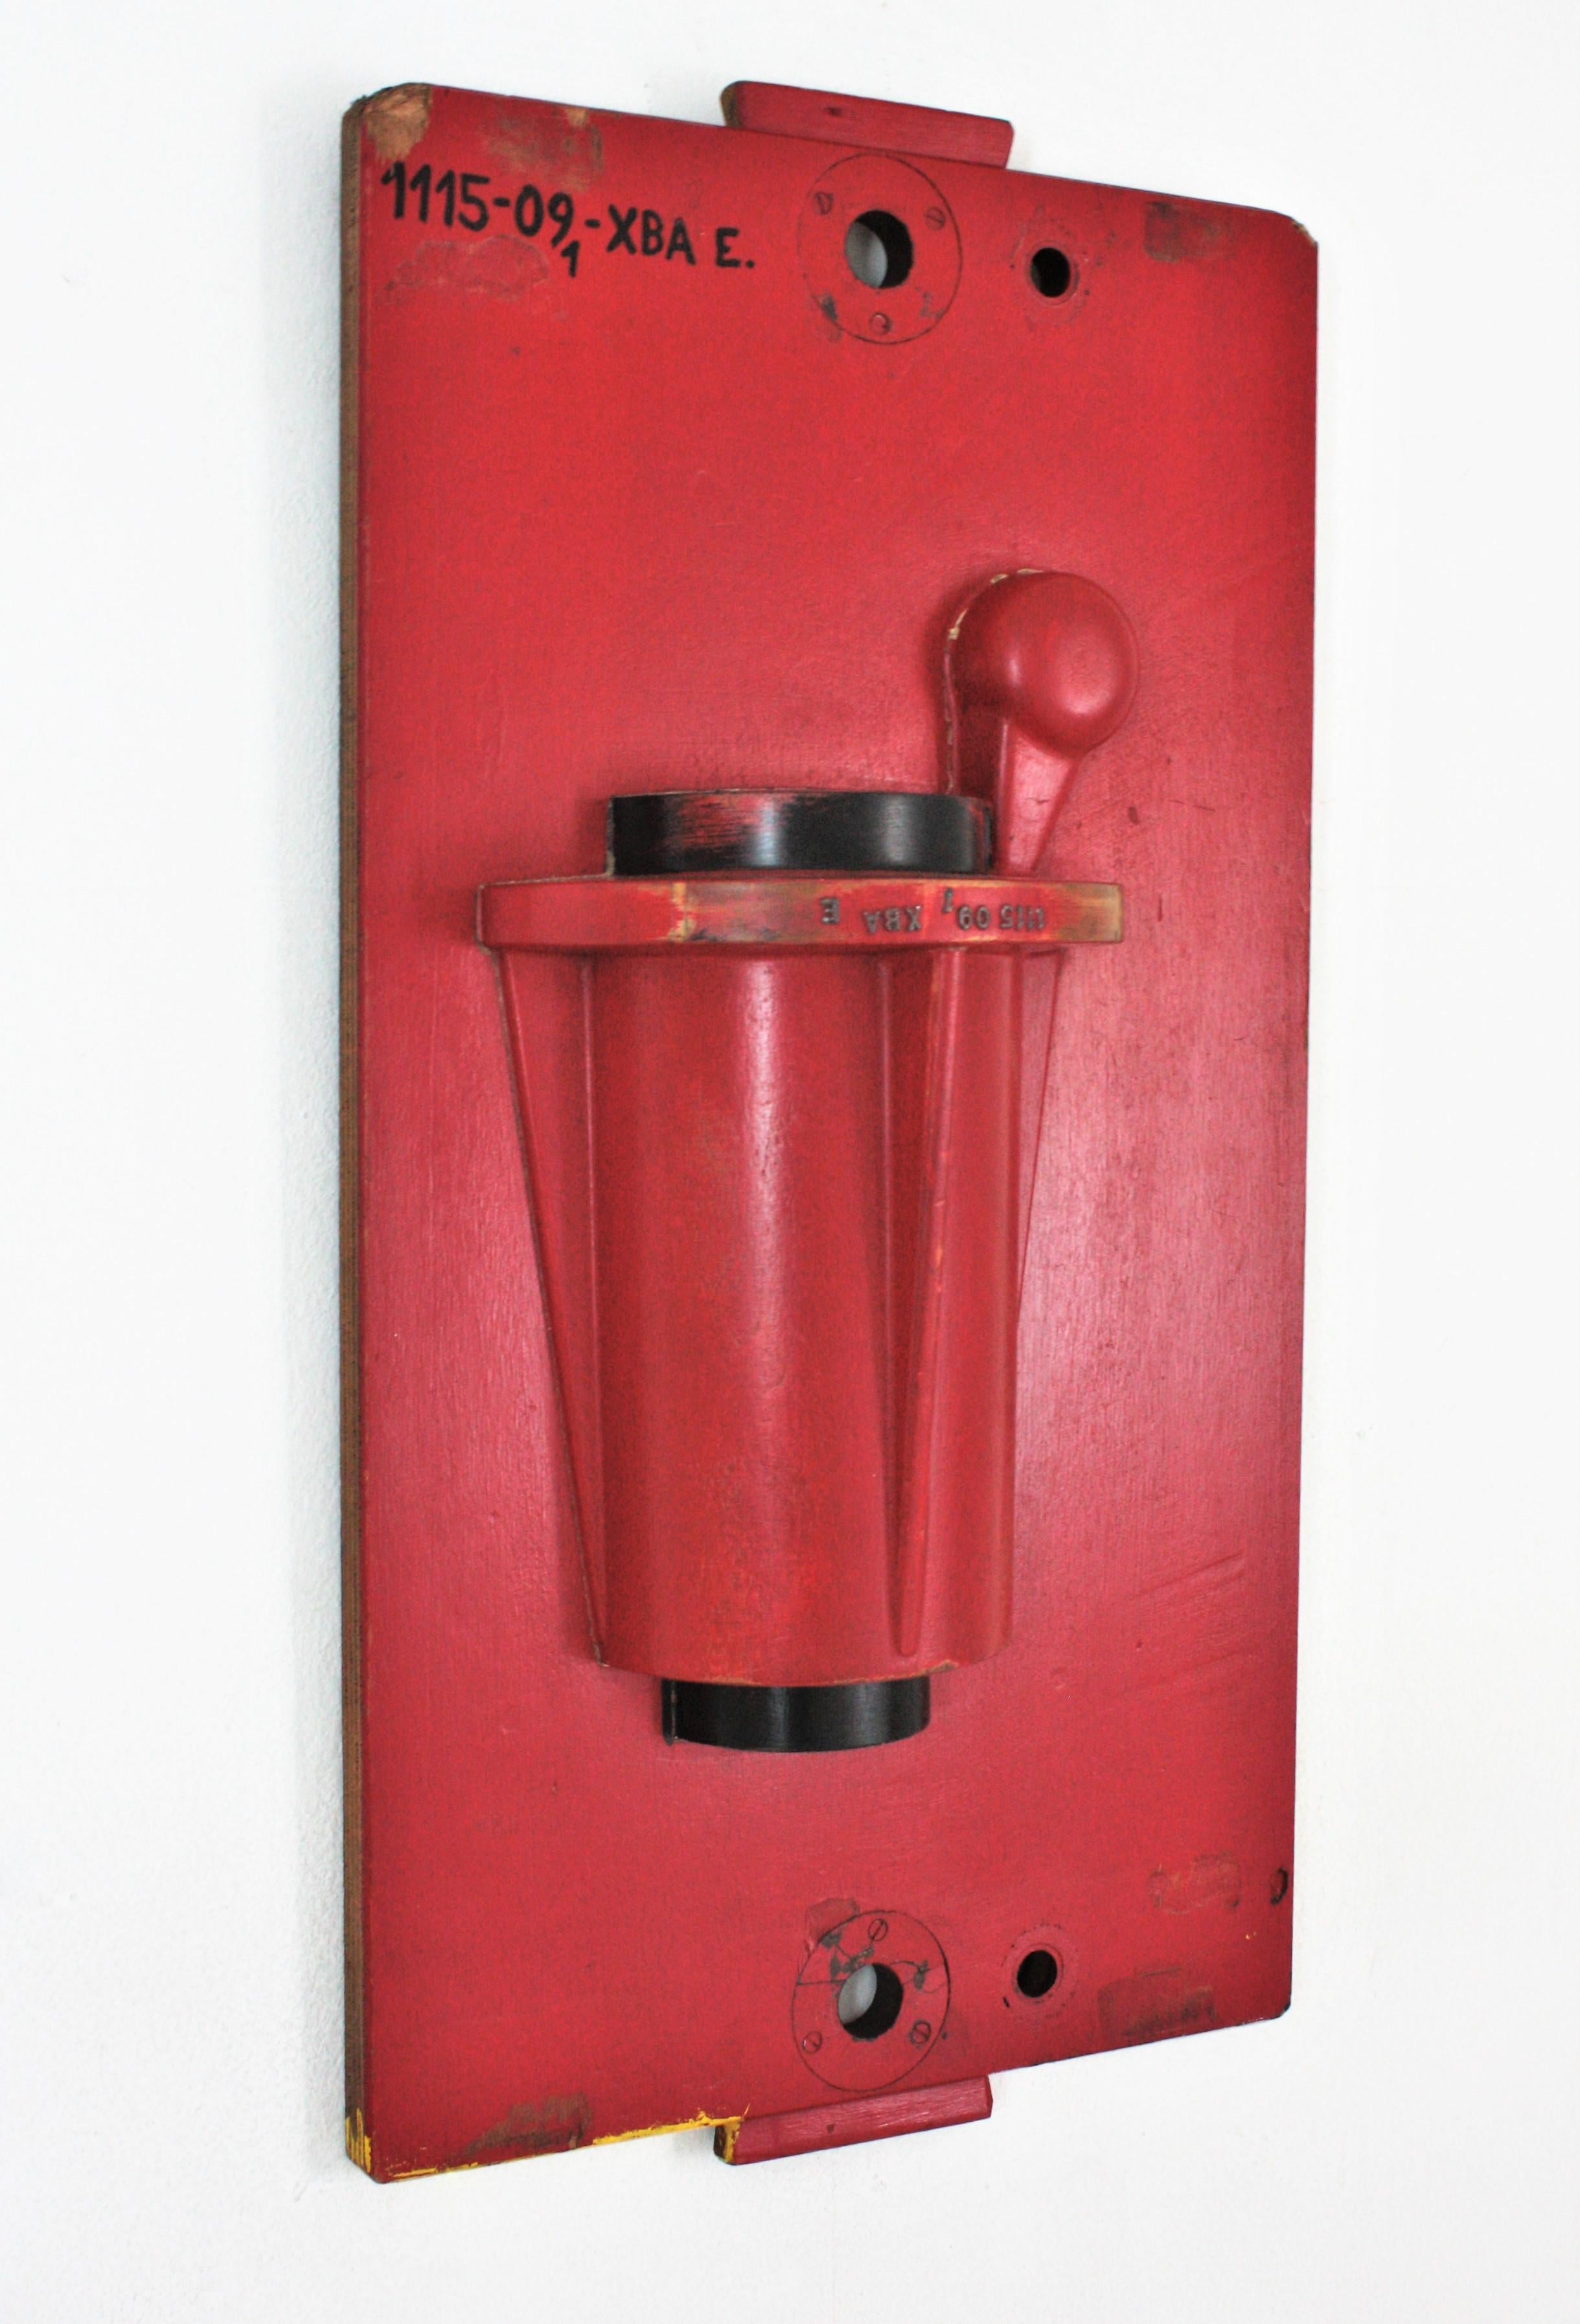 Holzgießerei-Form als Wandskulptur, Spanien, 1940er Jahre.
Schwarze und rote Originalfarben. 
Maße: 82 cm H x 43,5 cm B x 16 cm T // 32,28 in H x 17,12 in B x 6,29 in T
Dieses Stück wird eine schöne Ergänzung zu jeder industriellen Dekoration